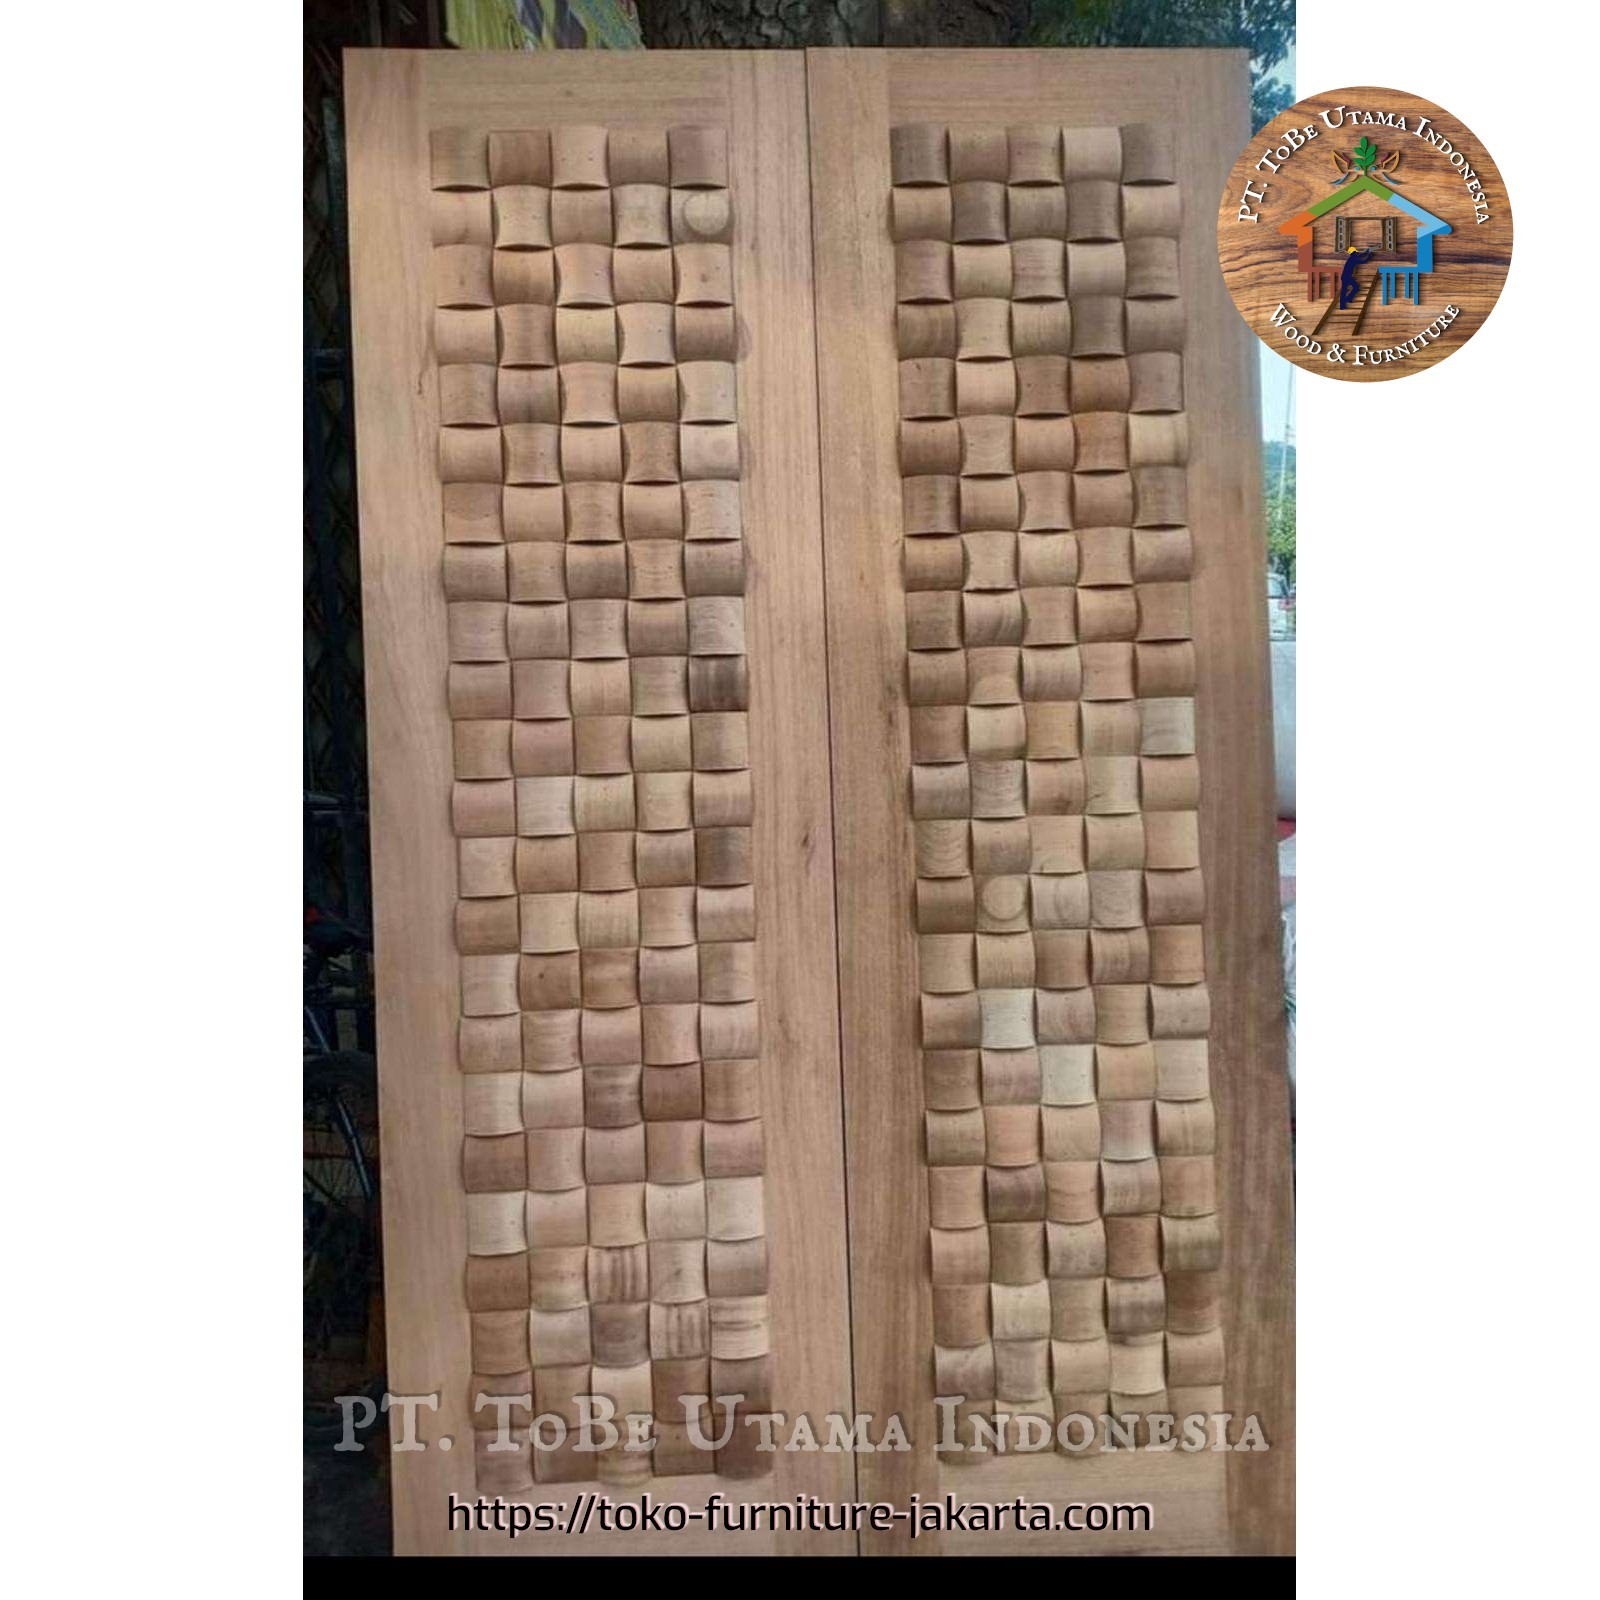 Pintu: Pintu Ketupat di buat dari kayu mahoni, kayu meranti (gambar 1 dari 1).